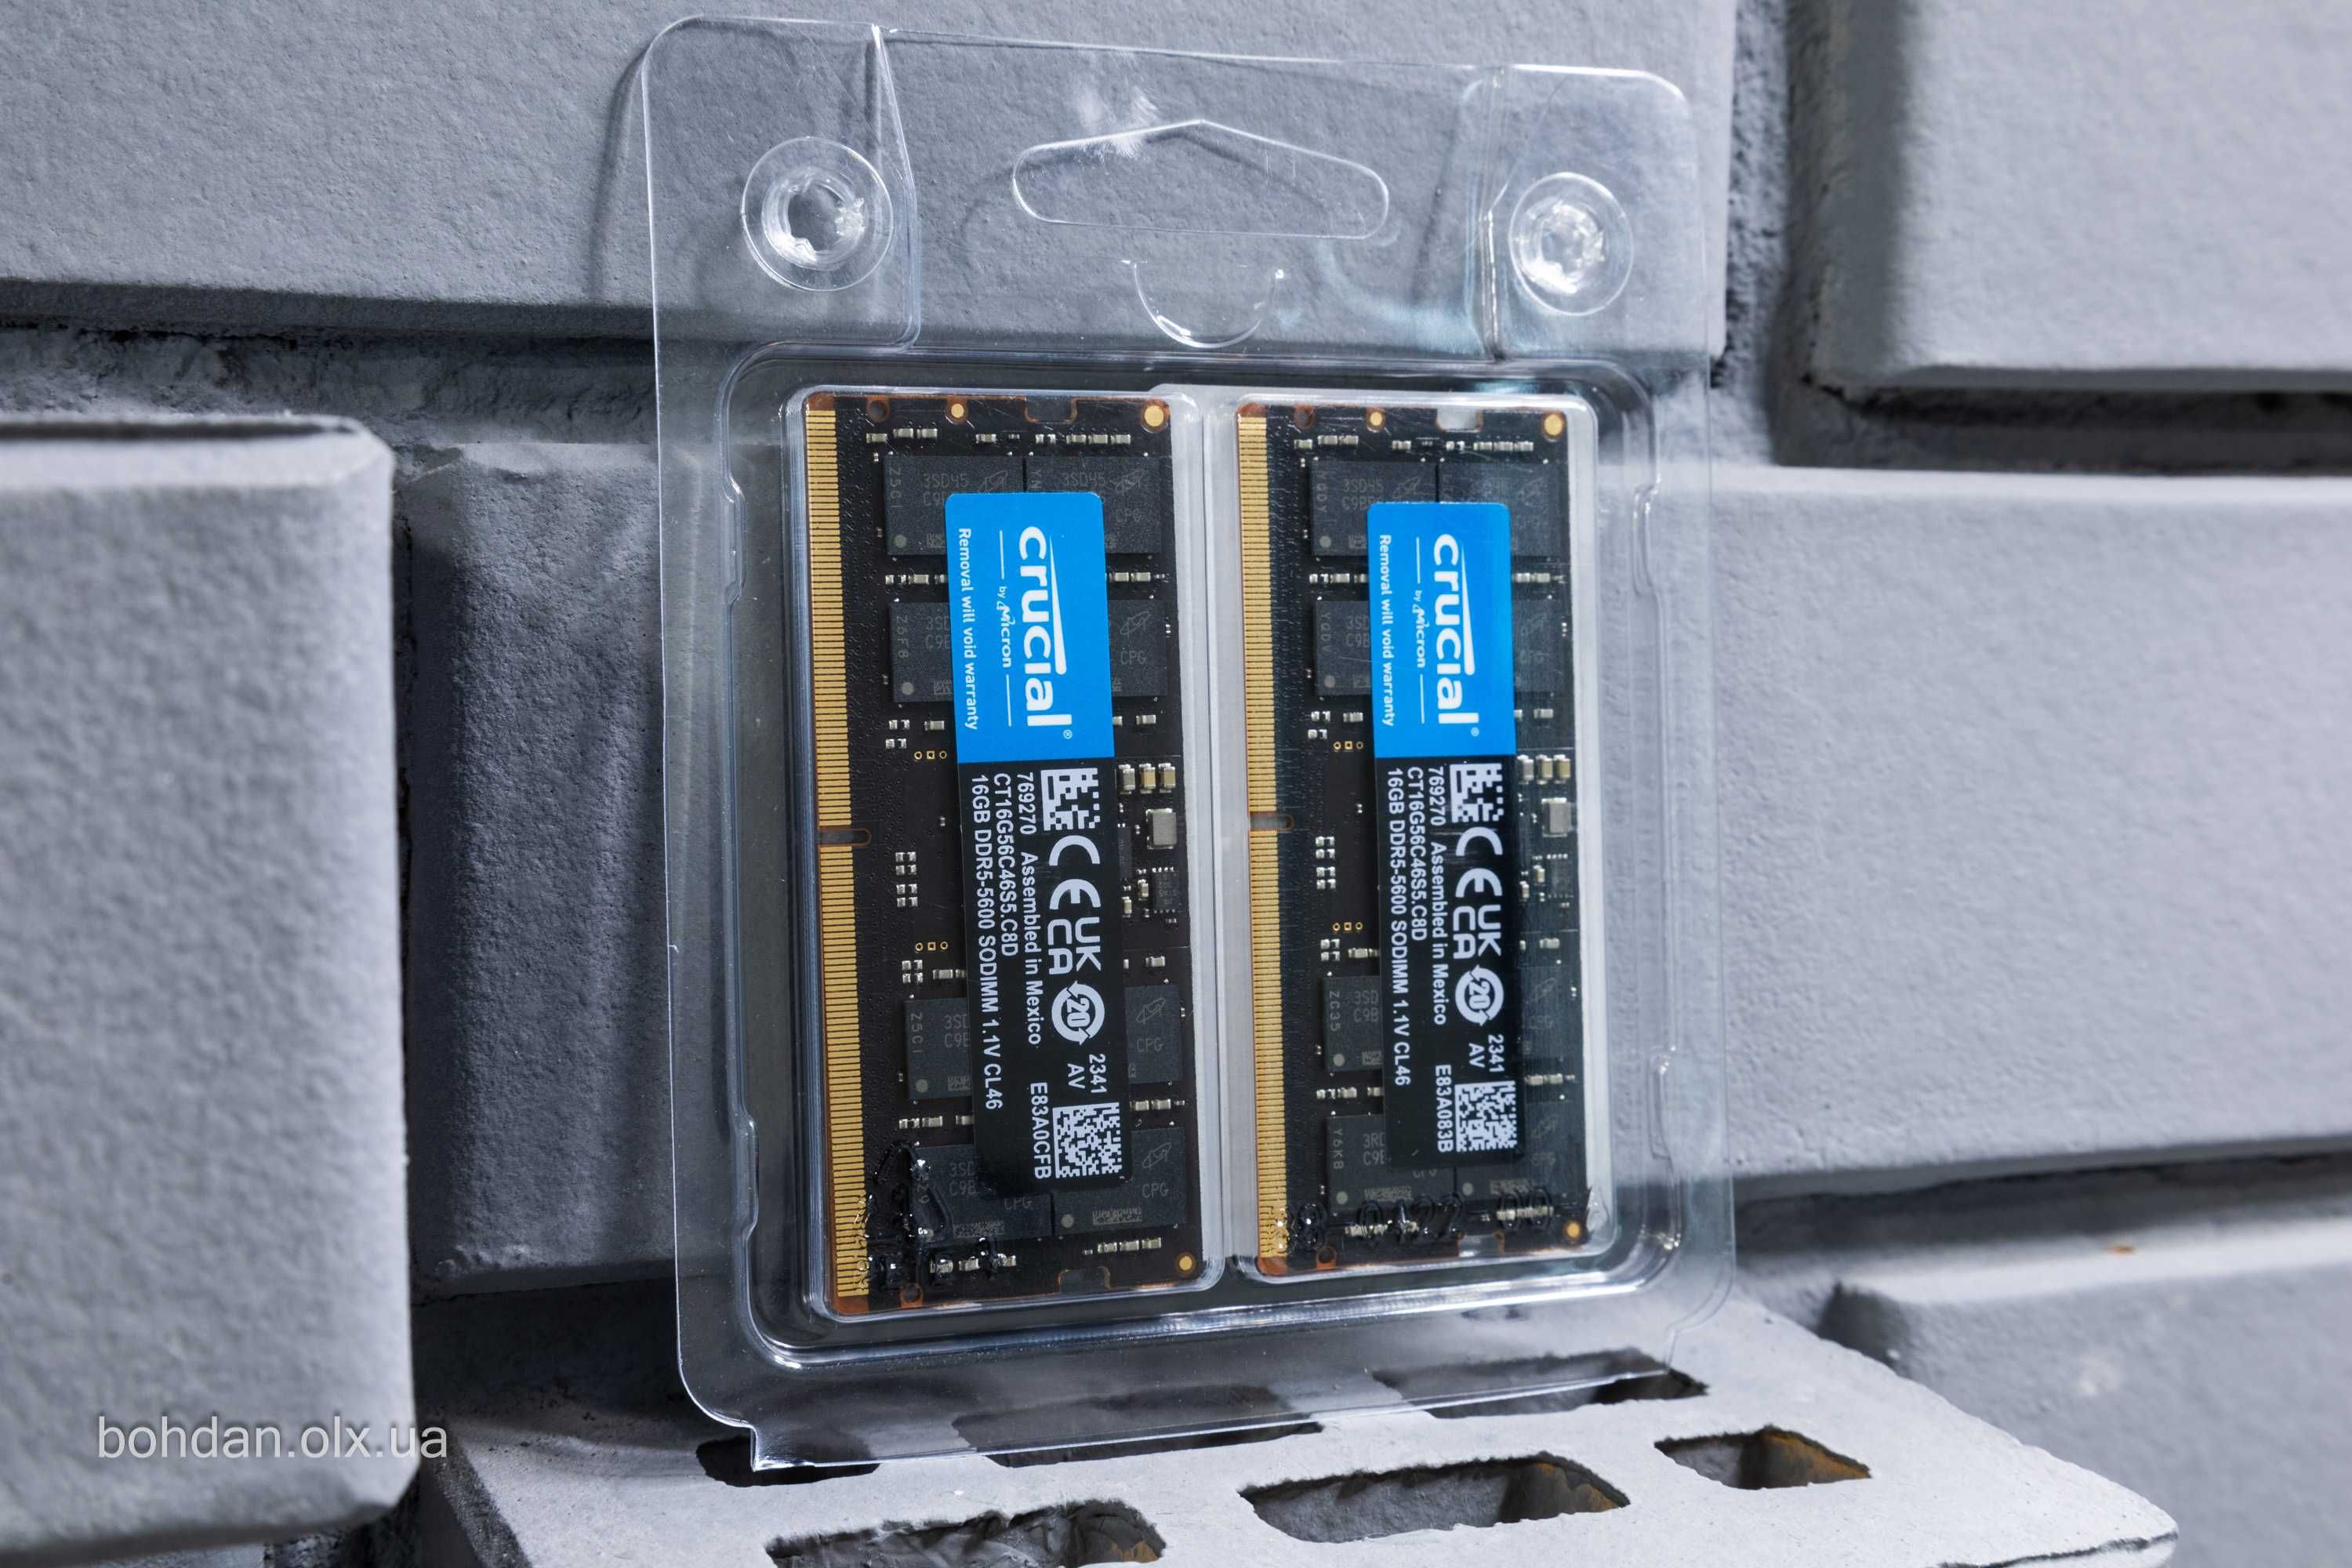 2x16GB Crucial 5600MHz DDR5 SODIMM RAM kit (CT2K16G56C46S5)